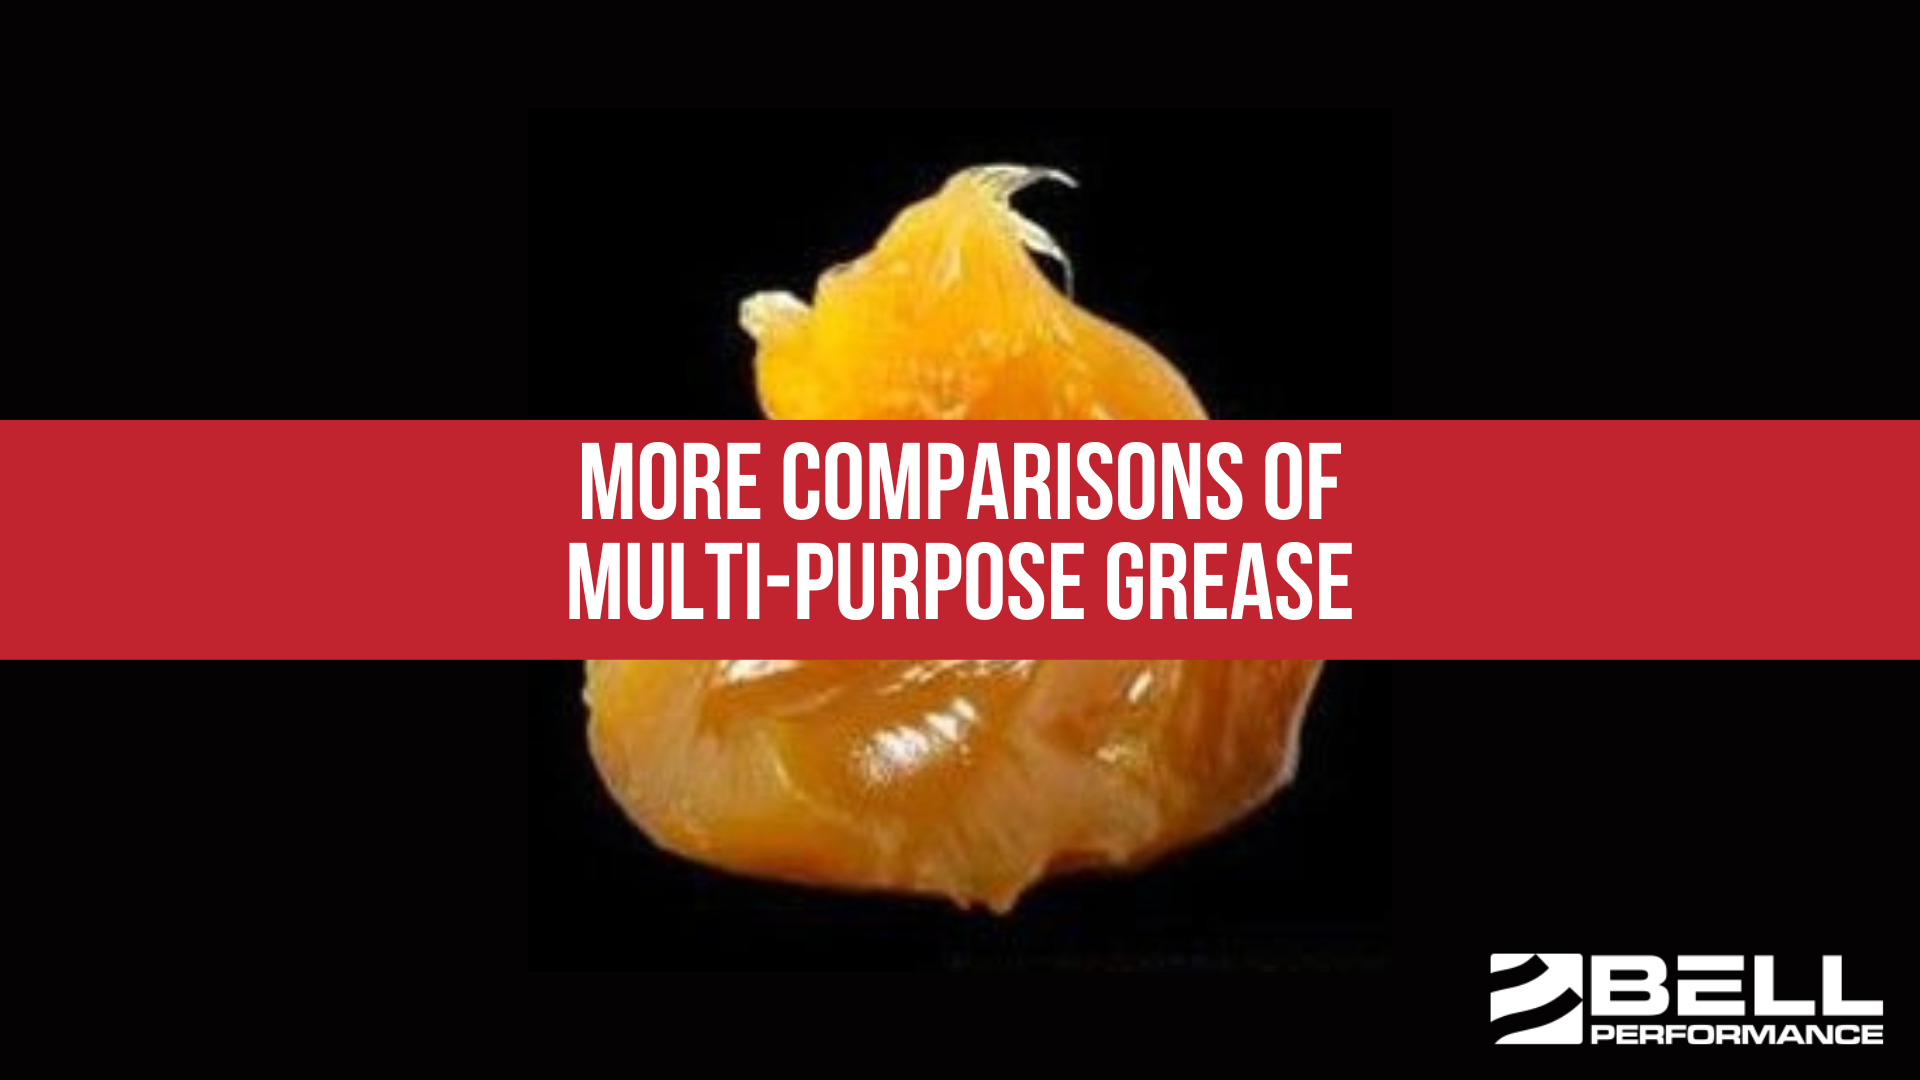 More Comparisons of Multi-Purpose Grease